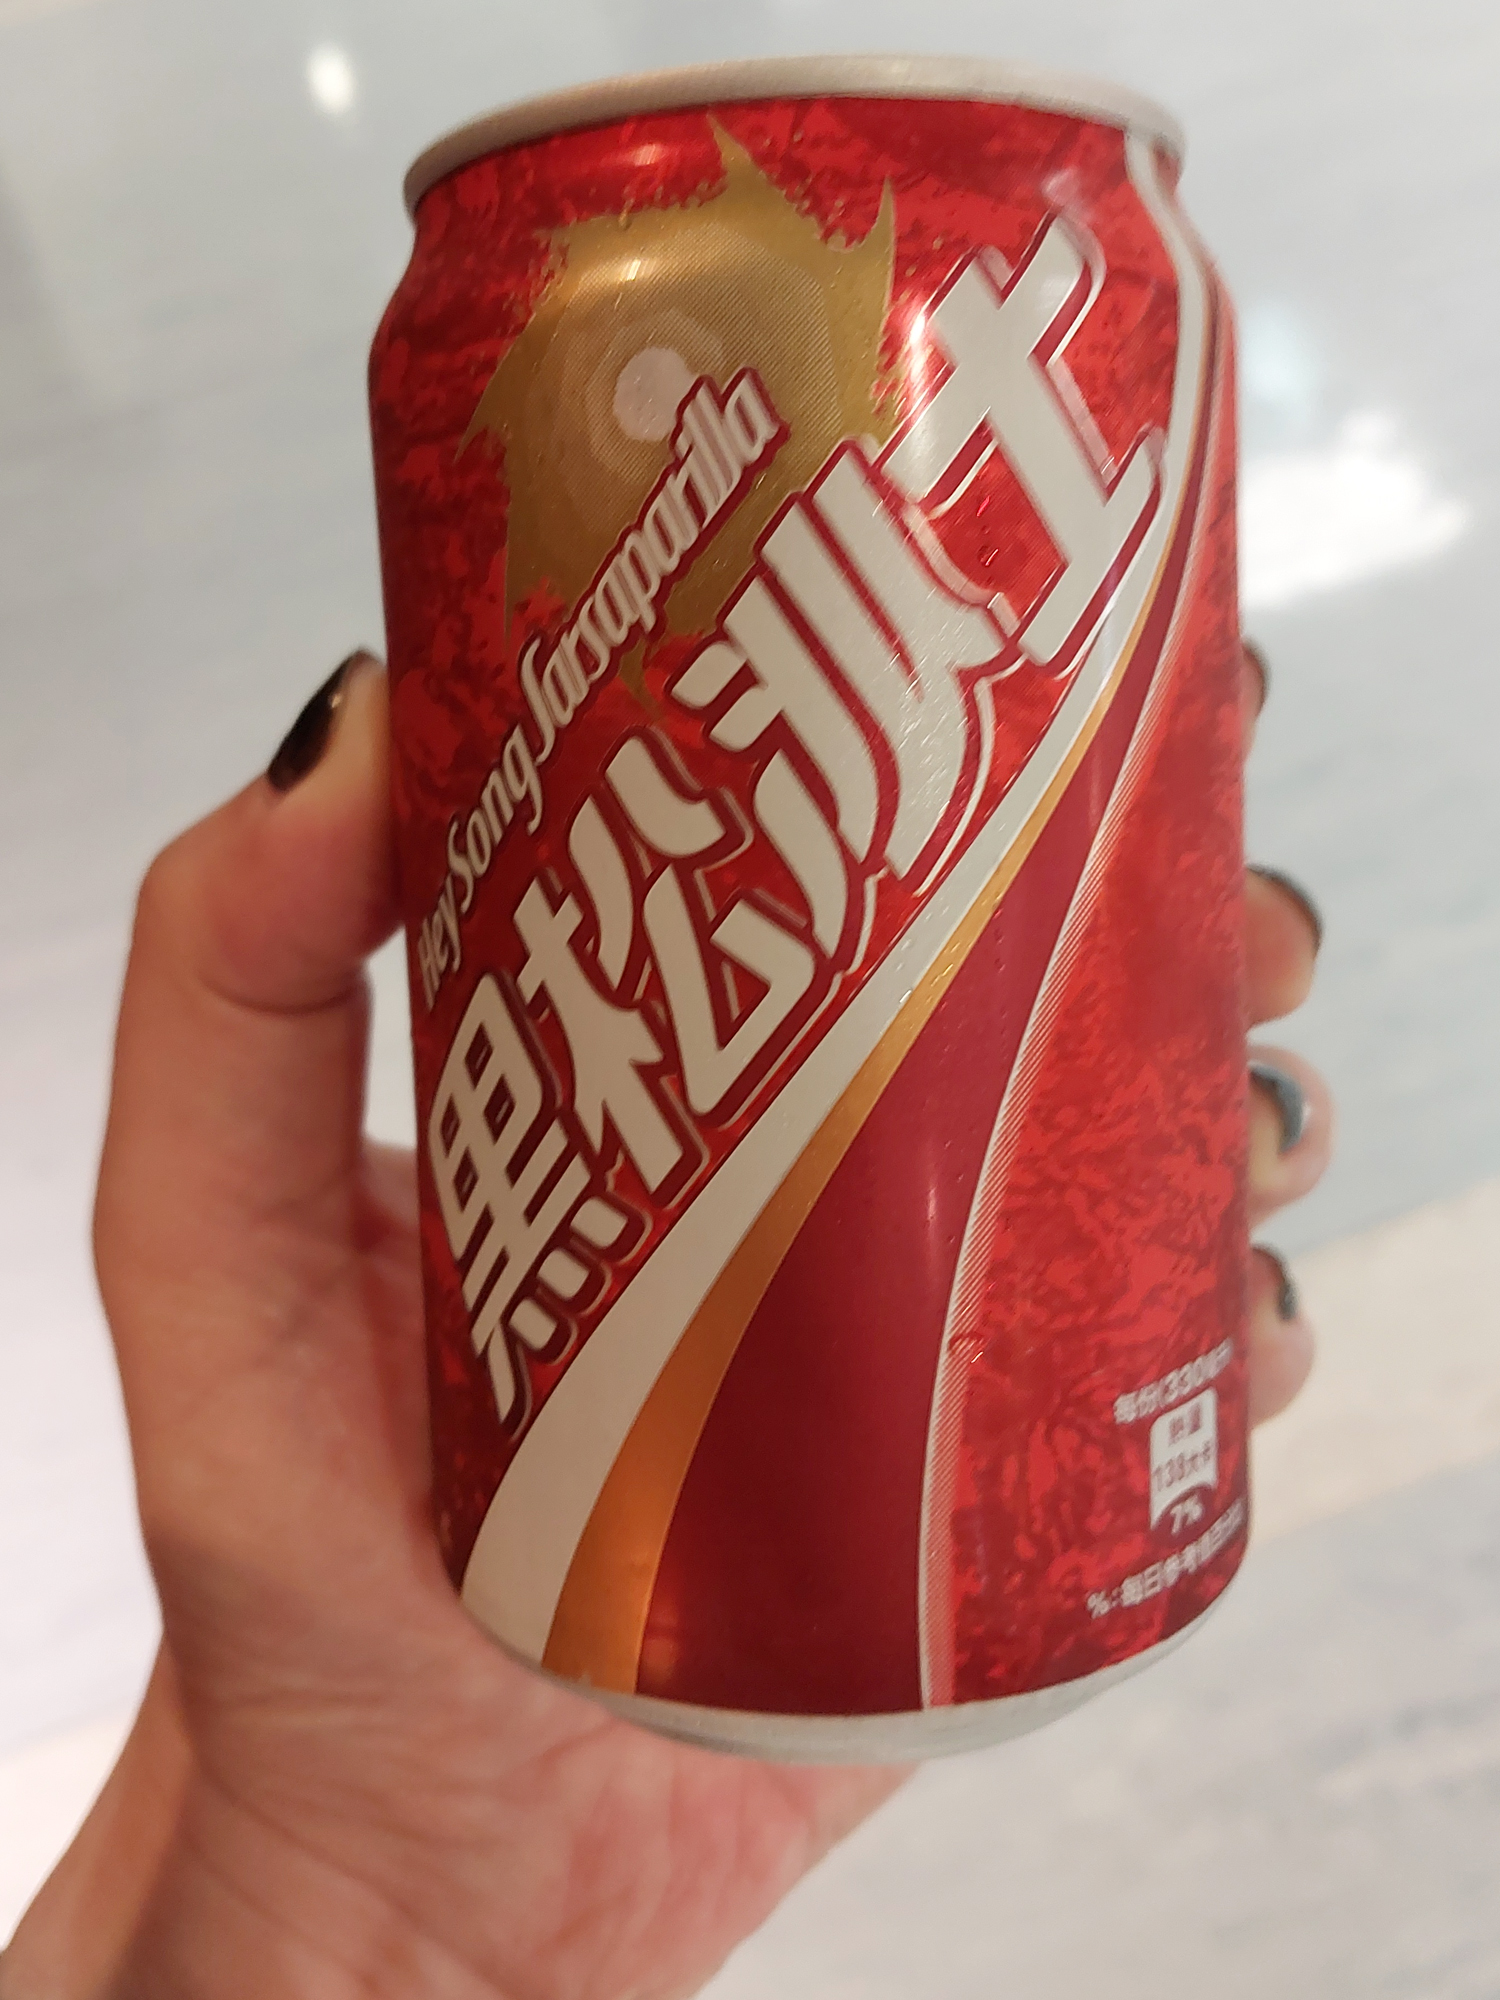 また色々すっ飛ばしてますが帰ります。松山空港で小銭消費の為に買った黒松沙士っていう台湾のコーラ。サロンパスの味がしますね。すごいクセの強いドクターペッパーです。